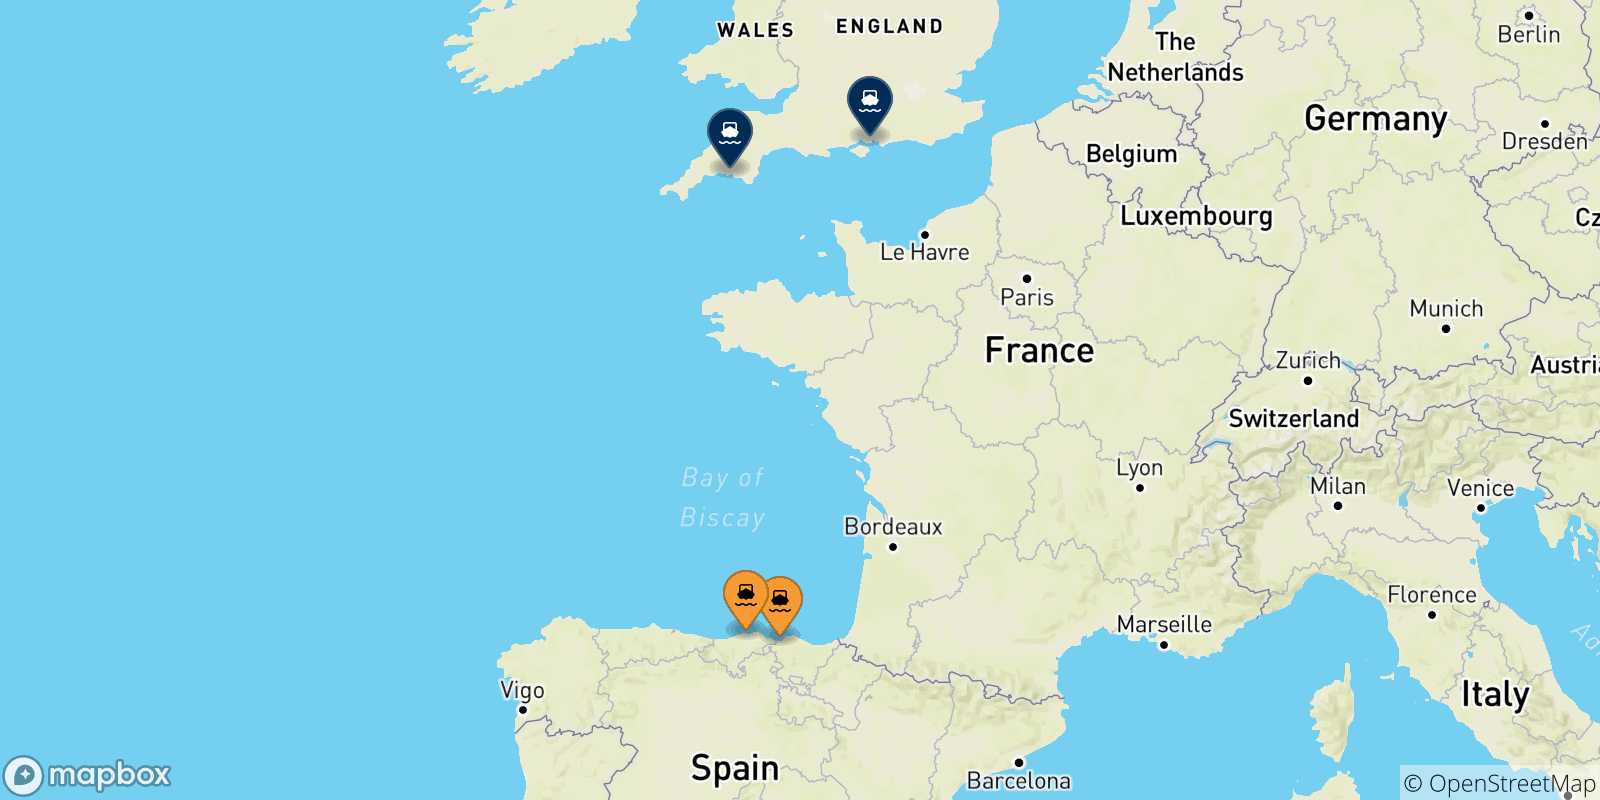 Mappa delle possibili rotte tra la Spagna e l'Inghilterra